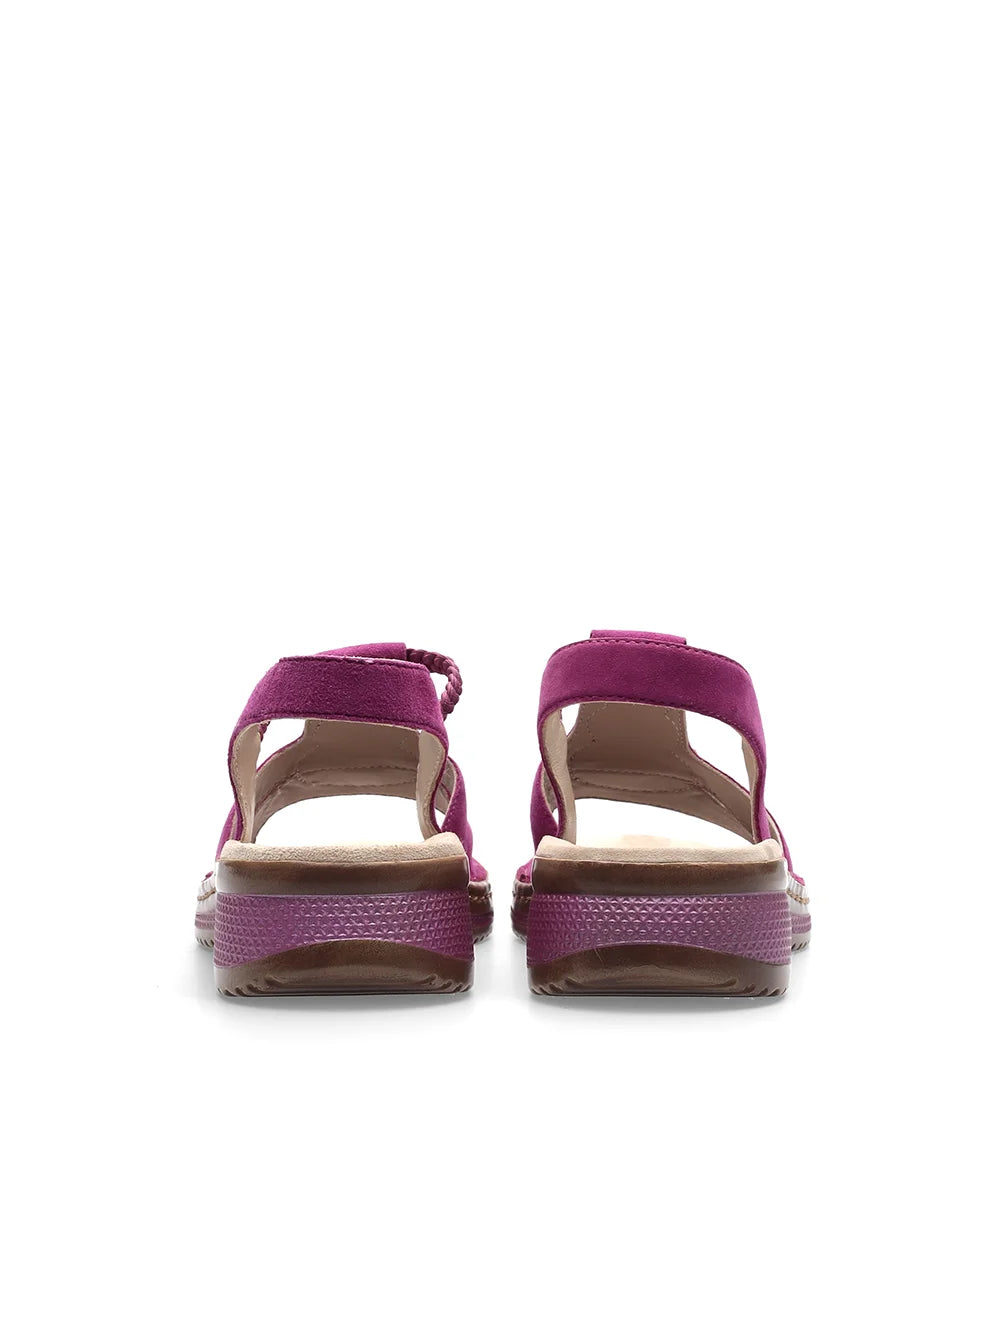 Ara Women's Hawaii 12-29008 Suede Wedge Heel Sandals Pink